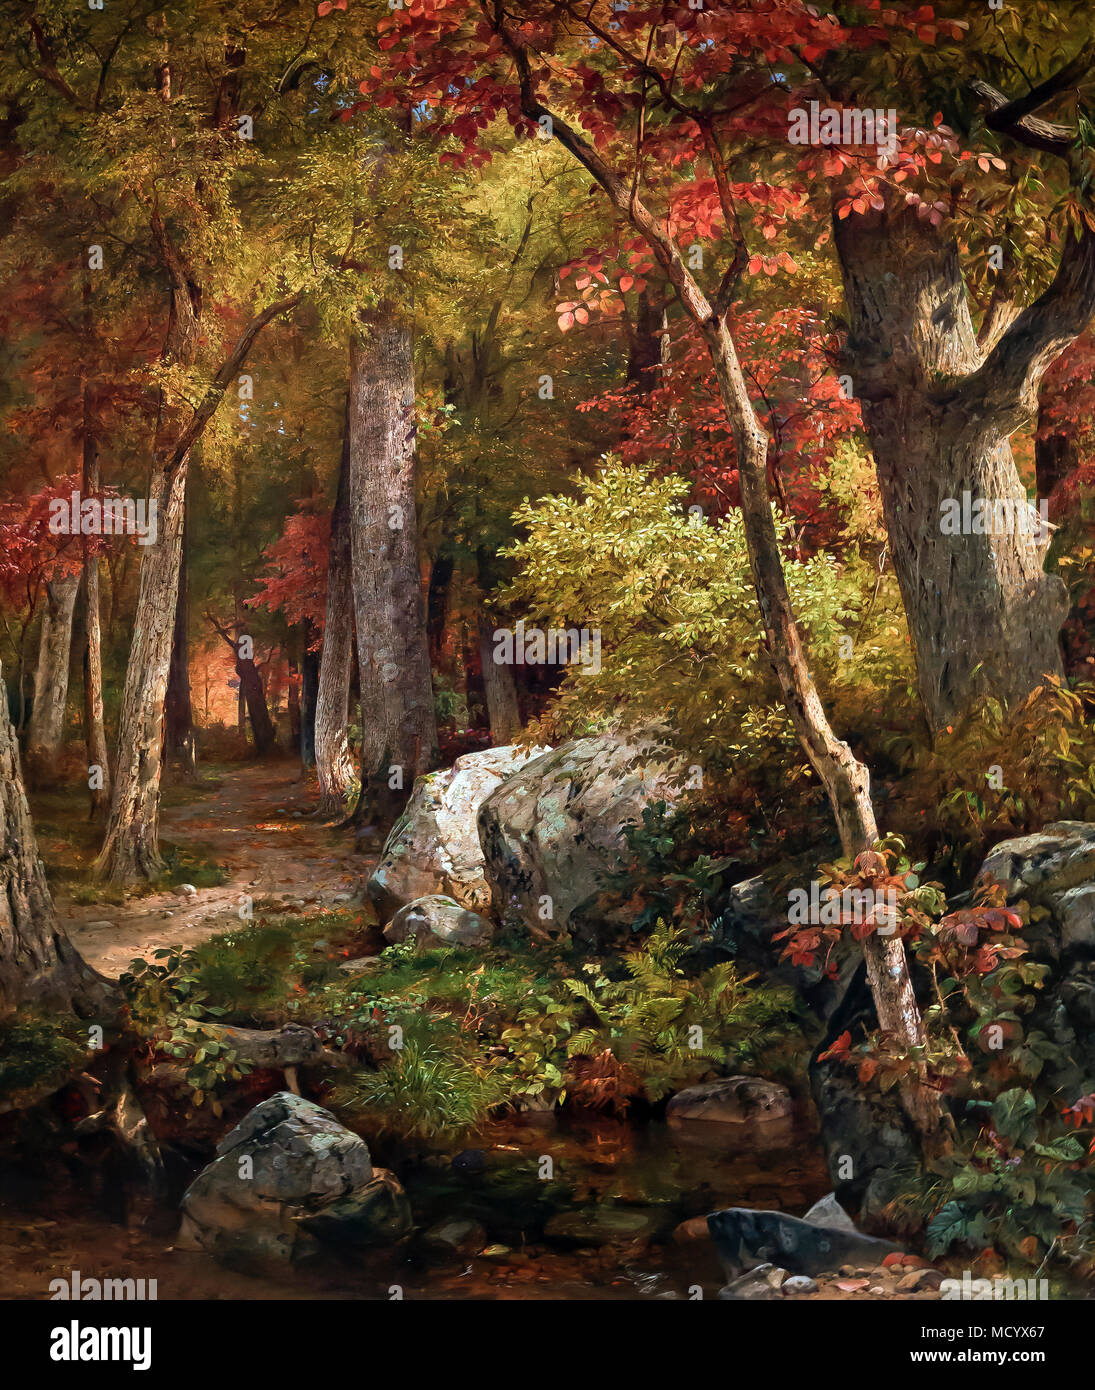 Octobre, William Trost Richards, 1863, National Gallery of Art, Washington DC, USA, Amérique du Nord Banque D'Images